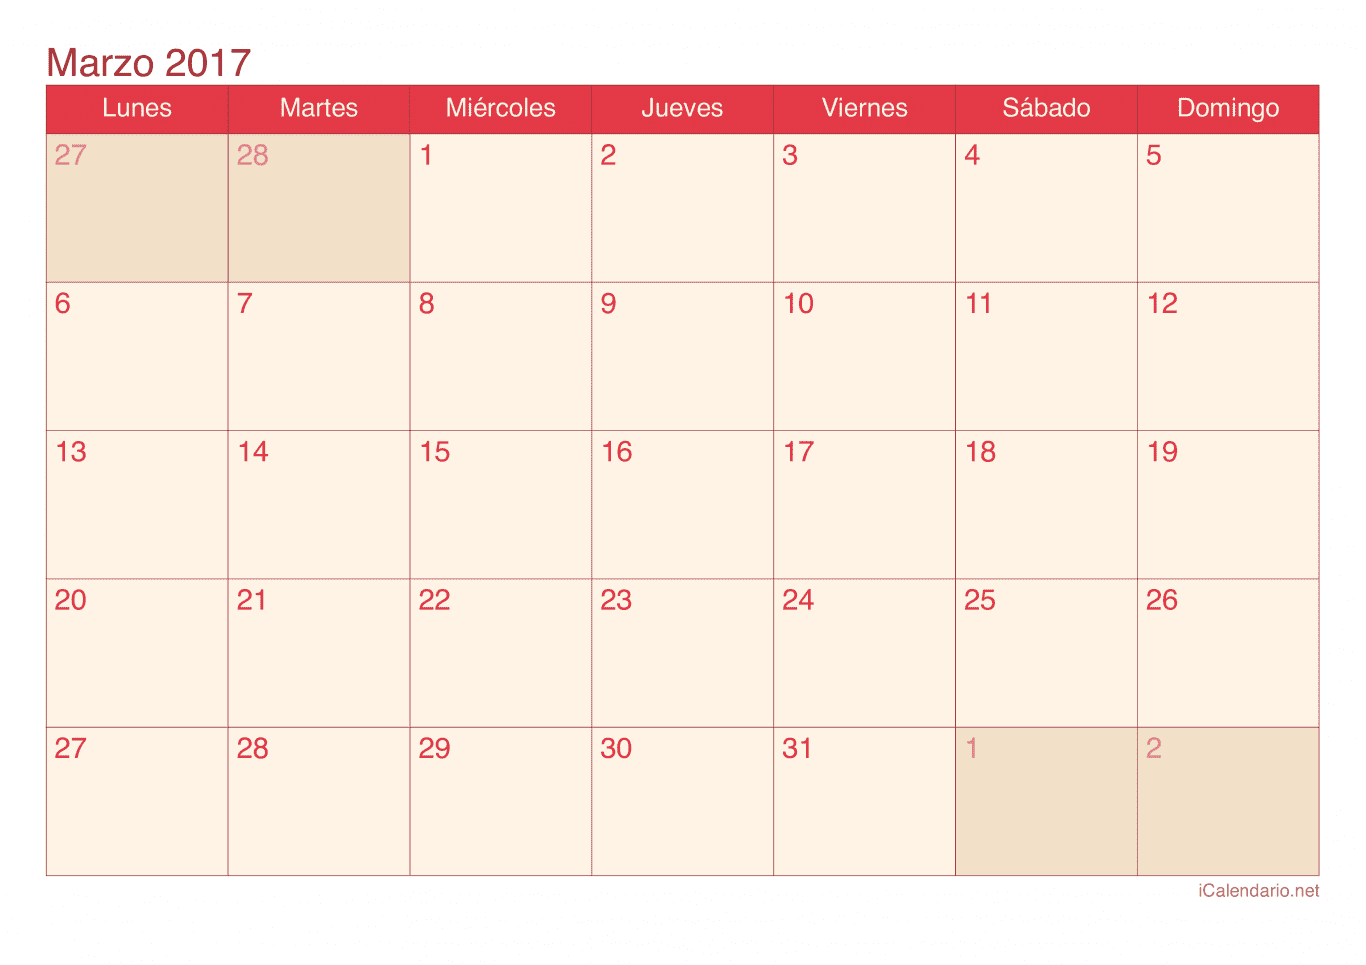 Calendario de marzo 2017 - Cherry